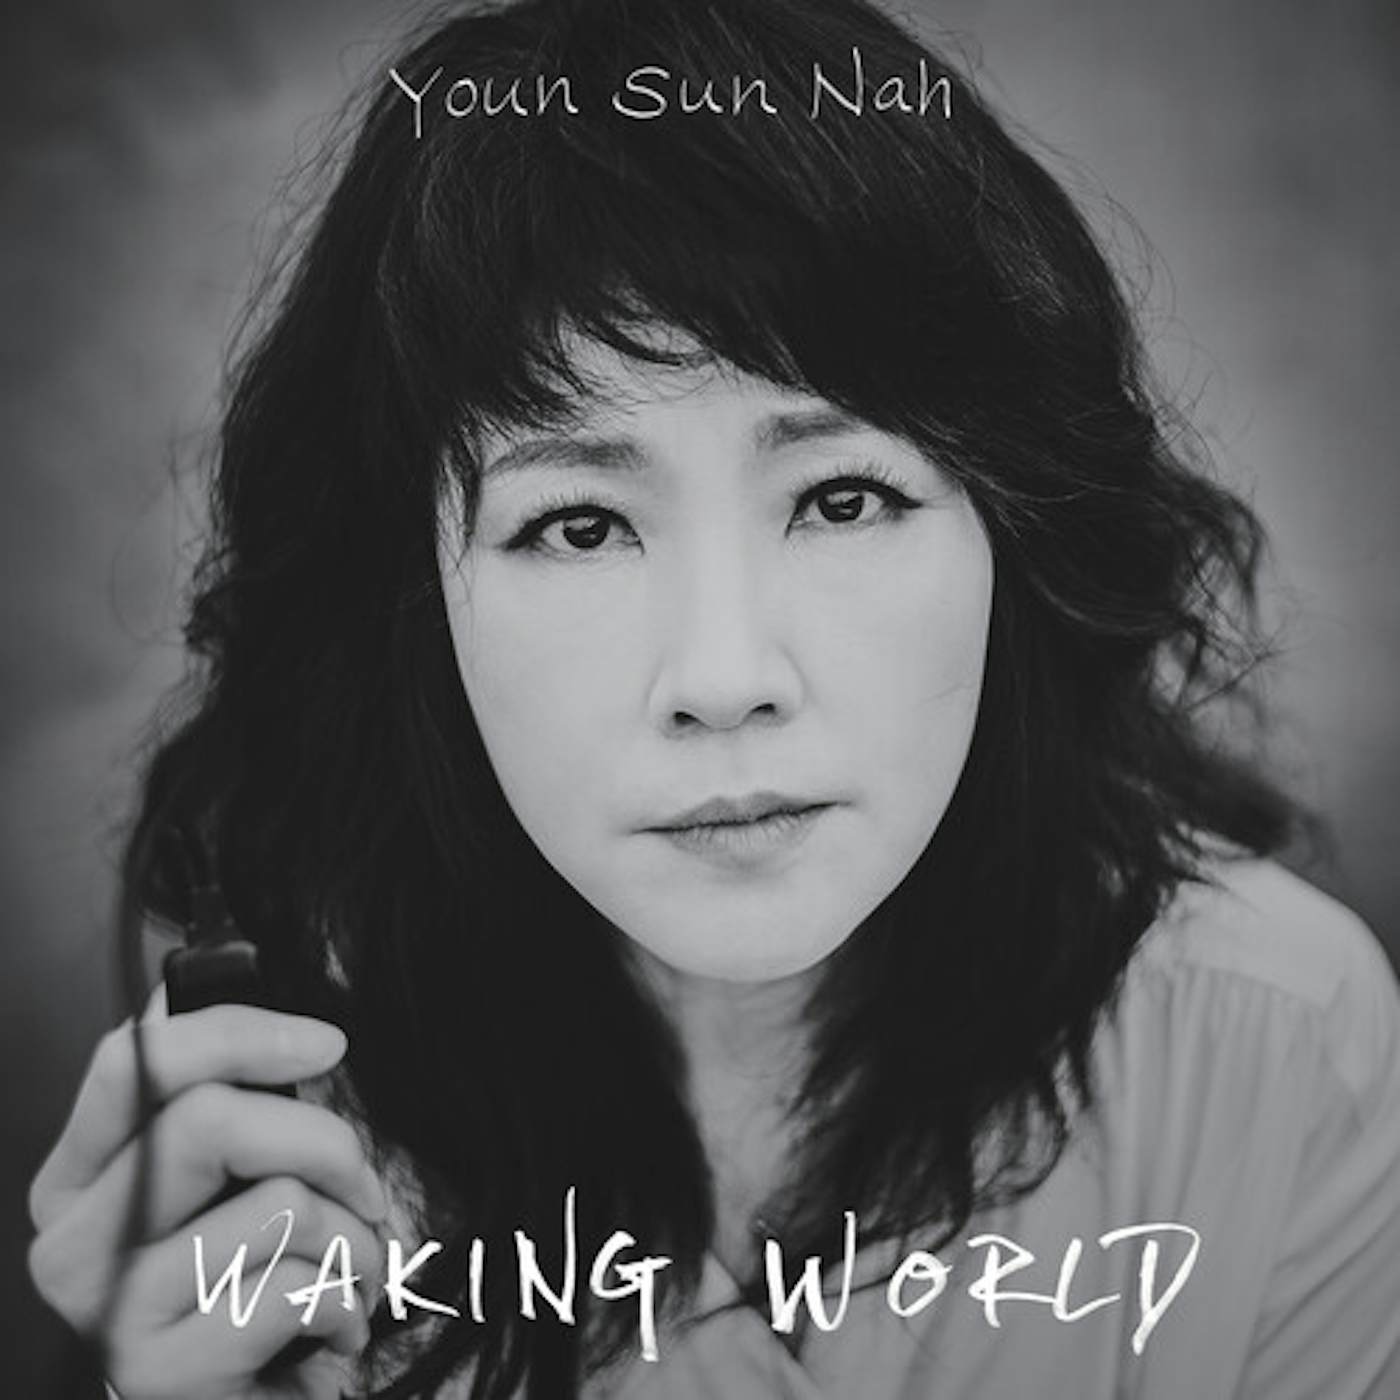 Youn Sun Nah WAKING WORLD CD